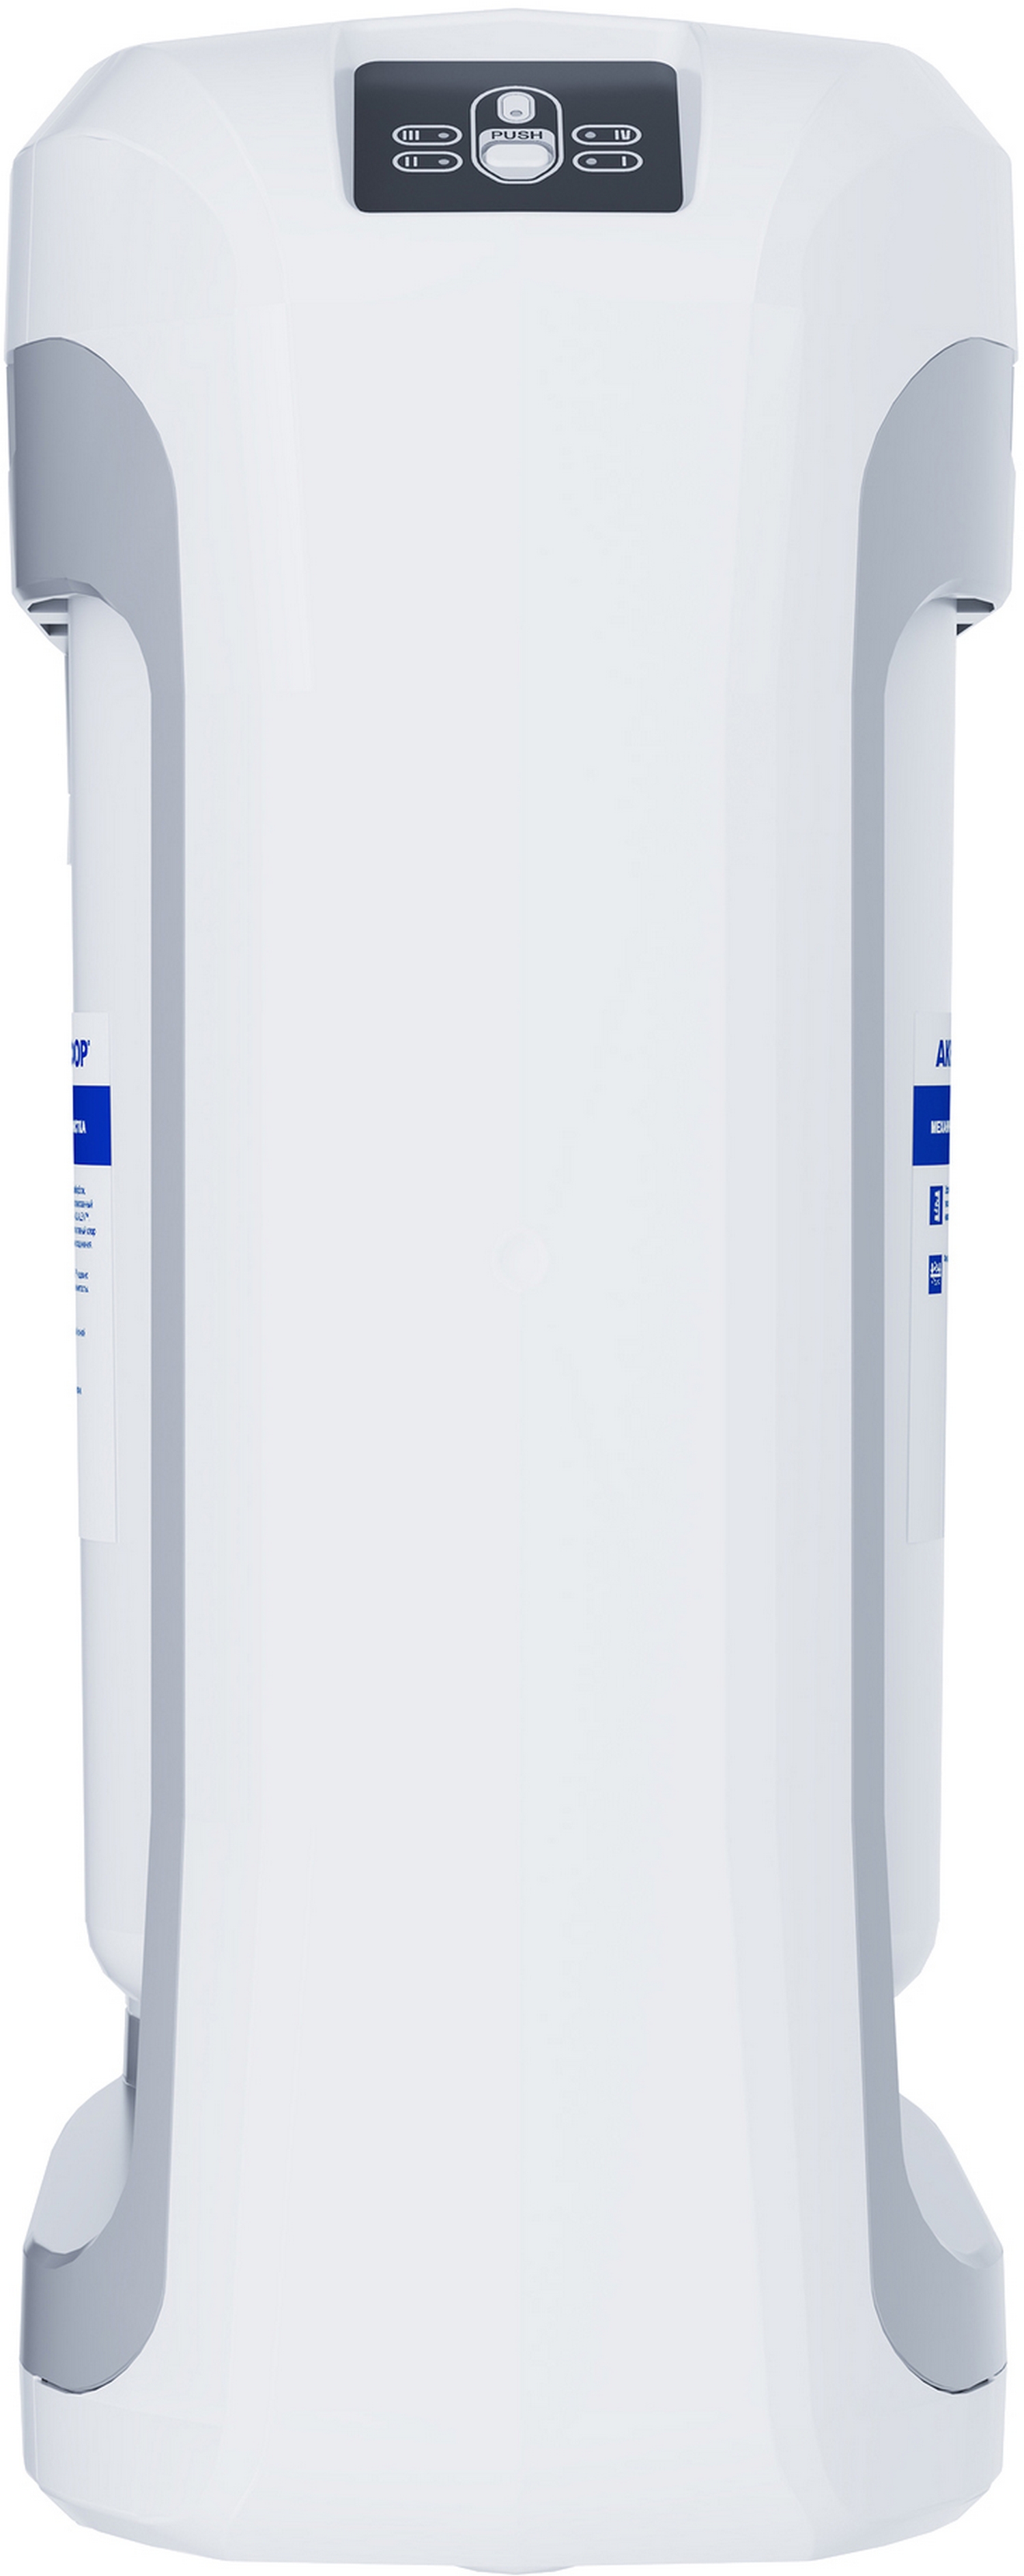 Фильтр для воды Aquaphor DWM-203 инструкция - изображение 6